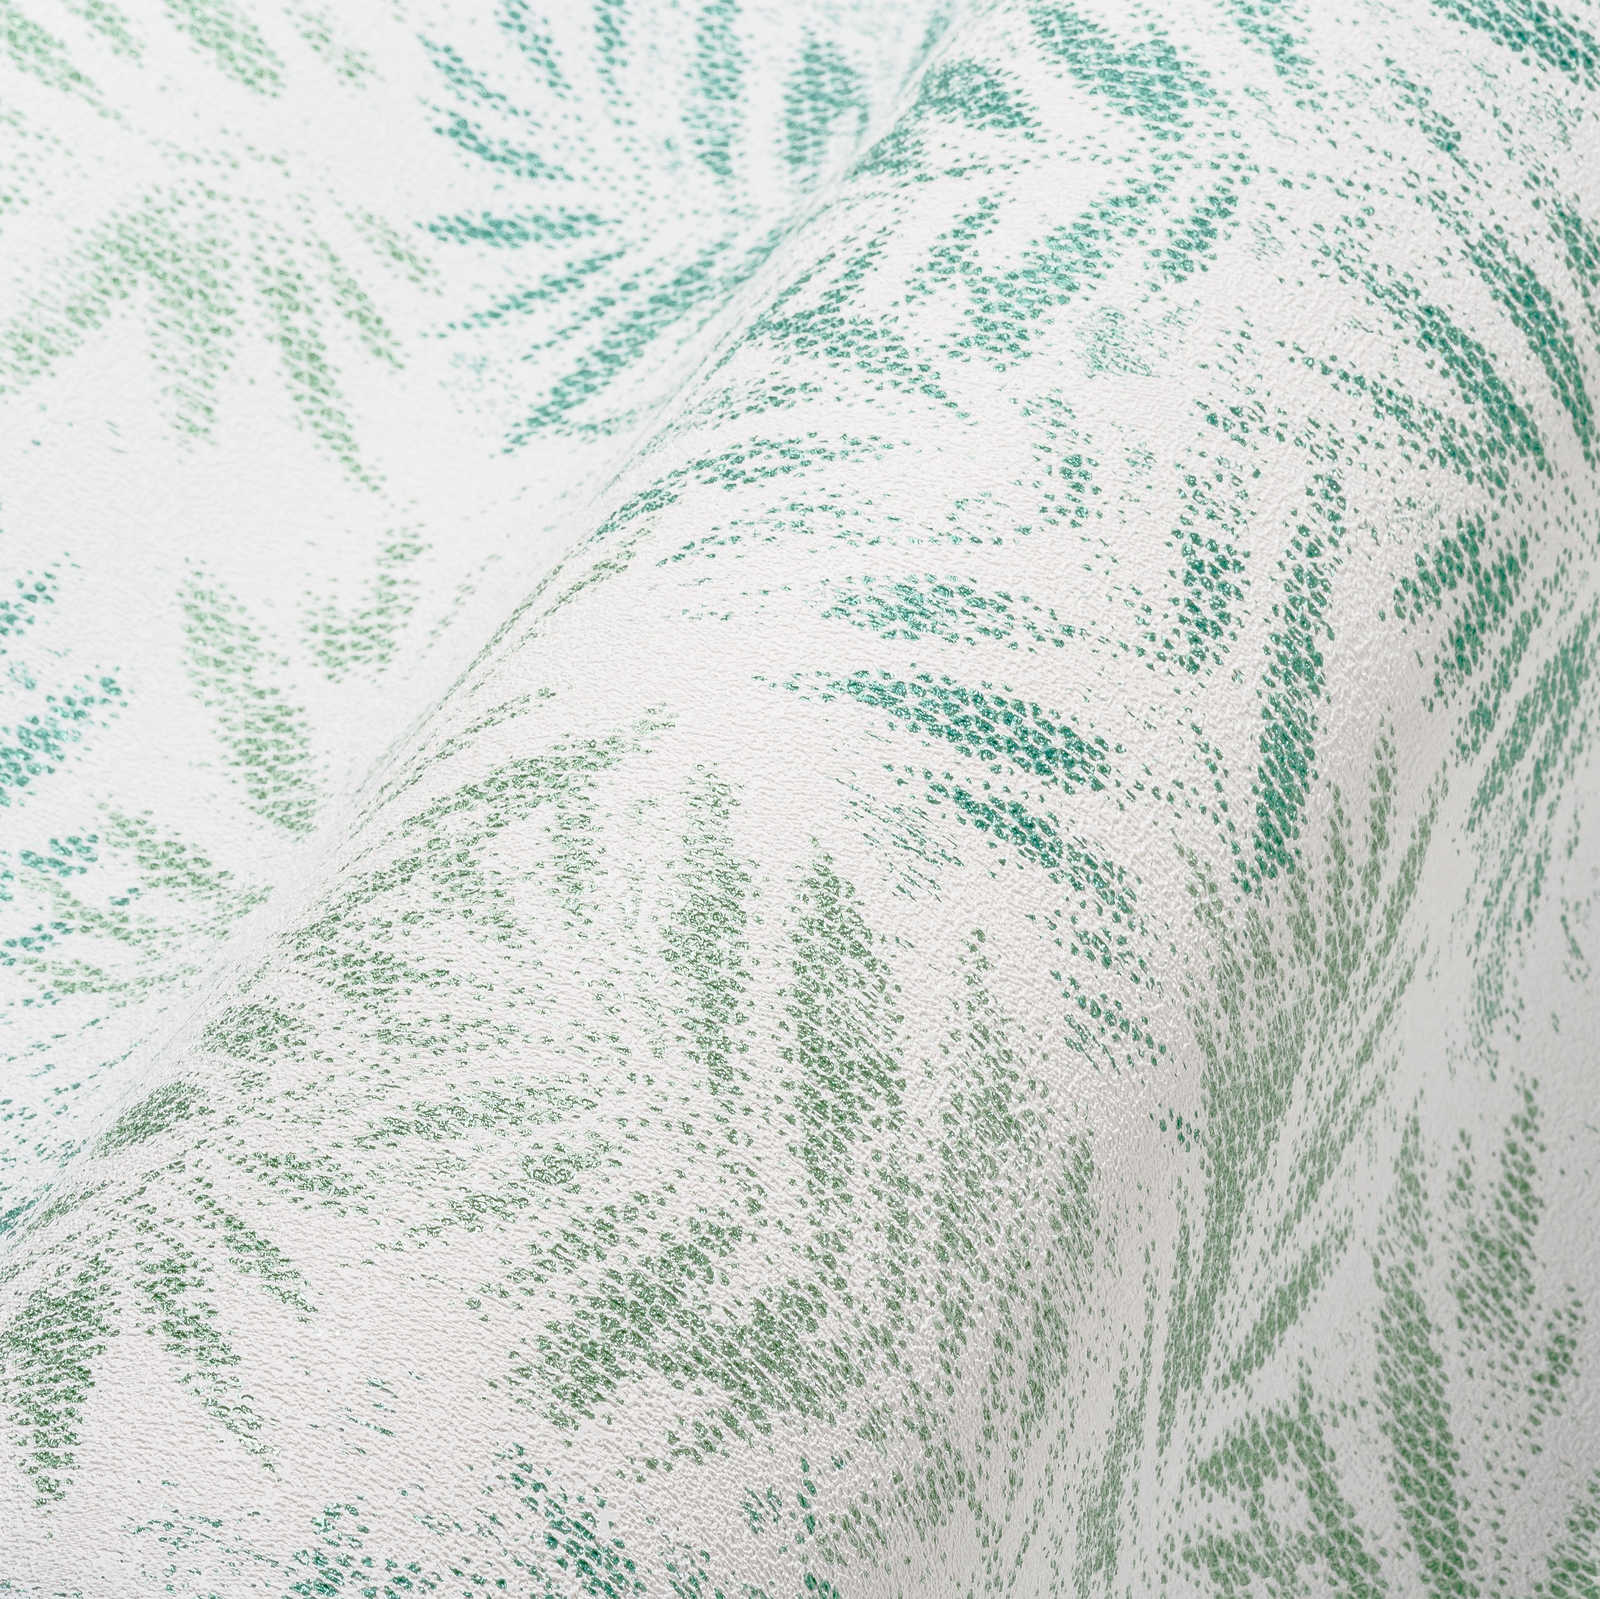             Bladpatroon behang met glanzende structuur - wit, groen
        